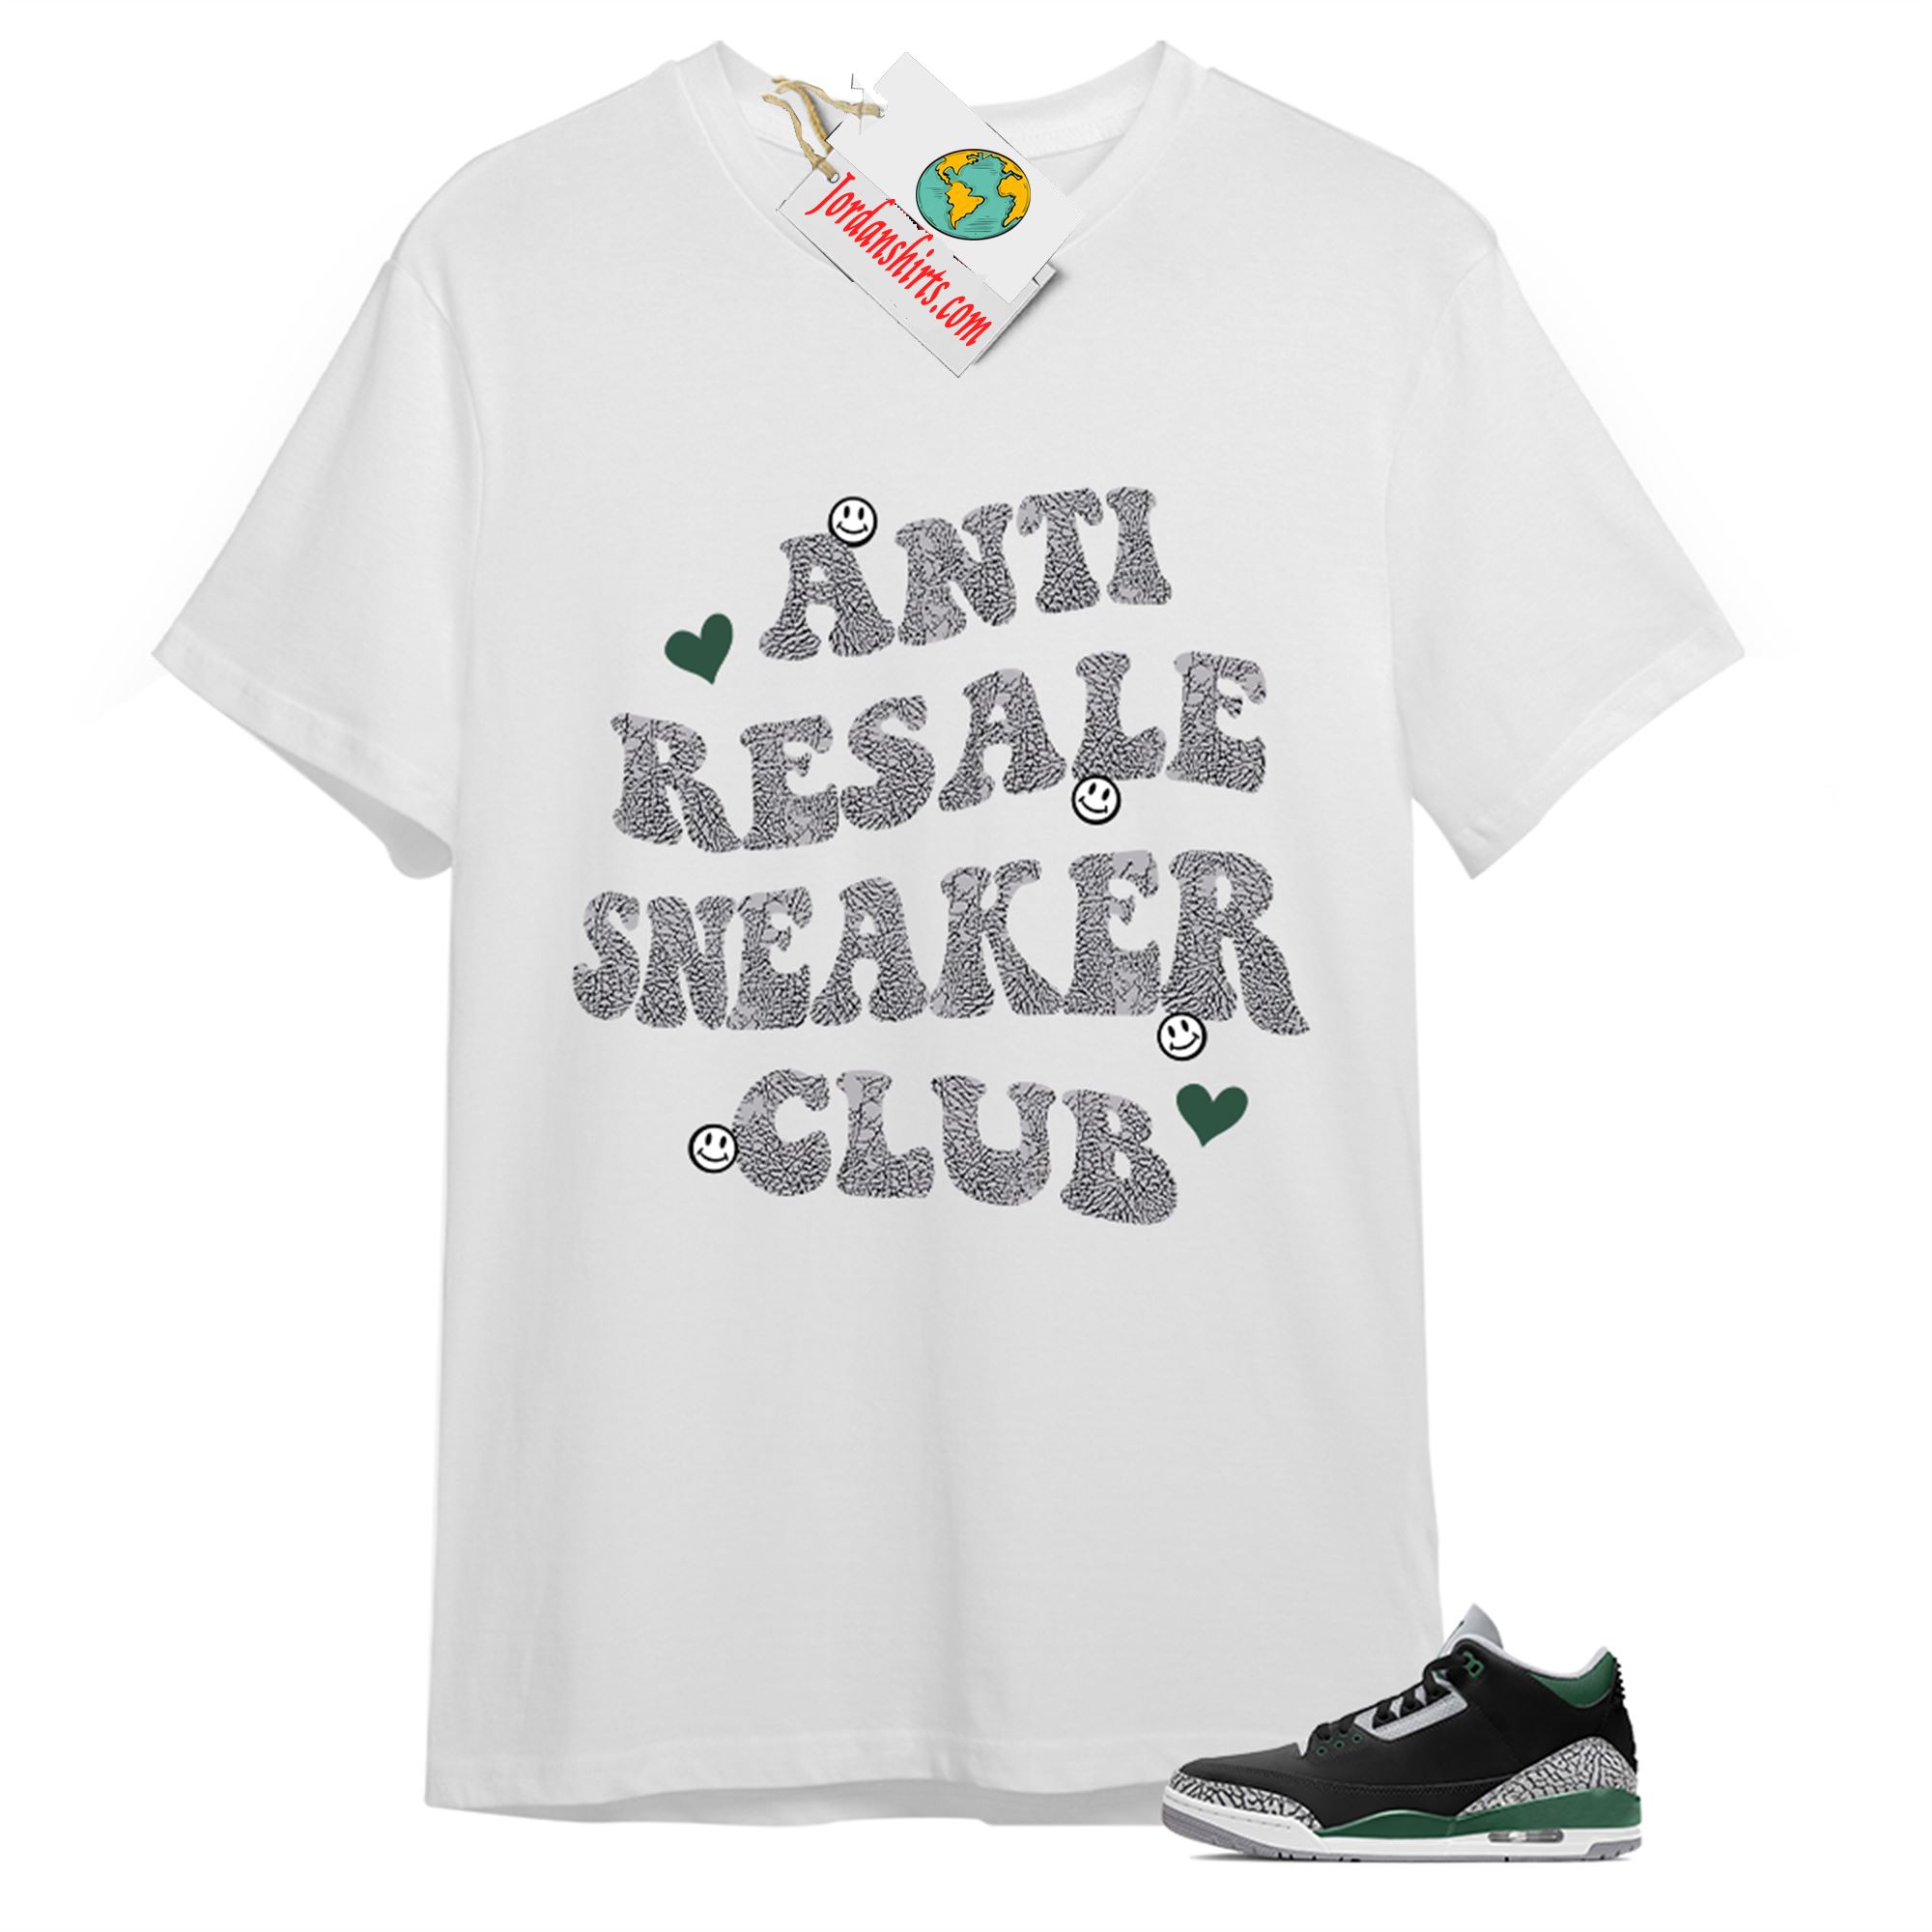 Jordan 3 Shirt, Anti Resale Sneaker Club White T-shirt Air Jordan 3 Pine Green 3s Plus Size Up To 5xl